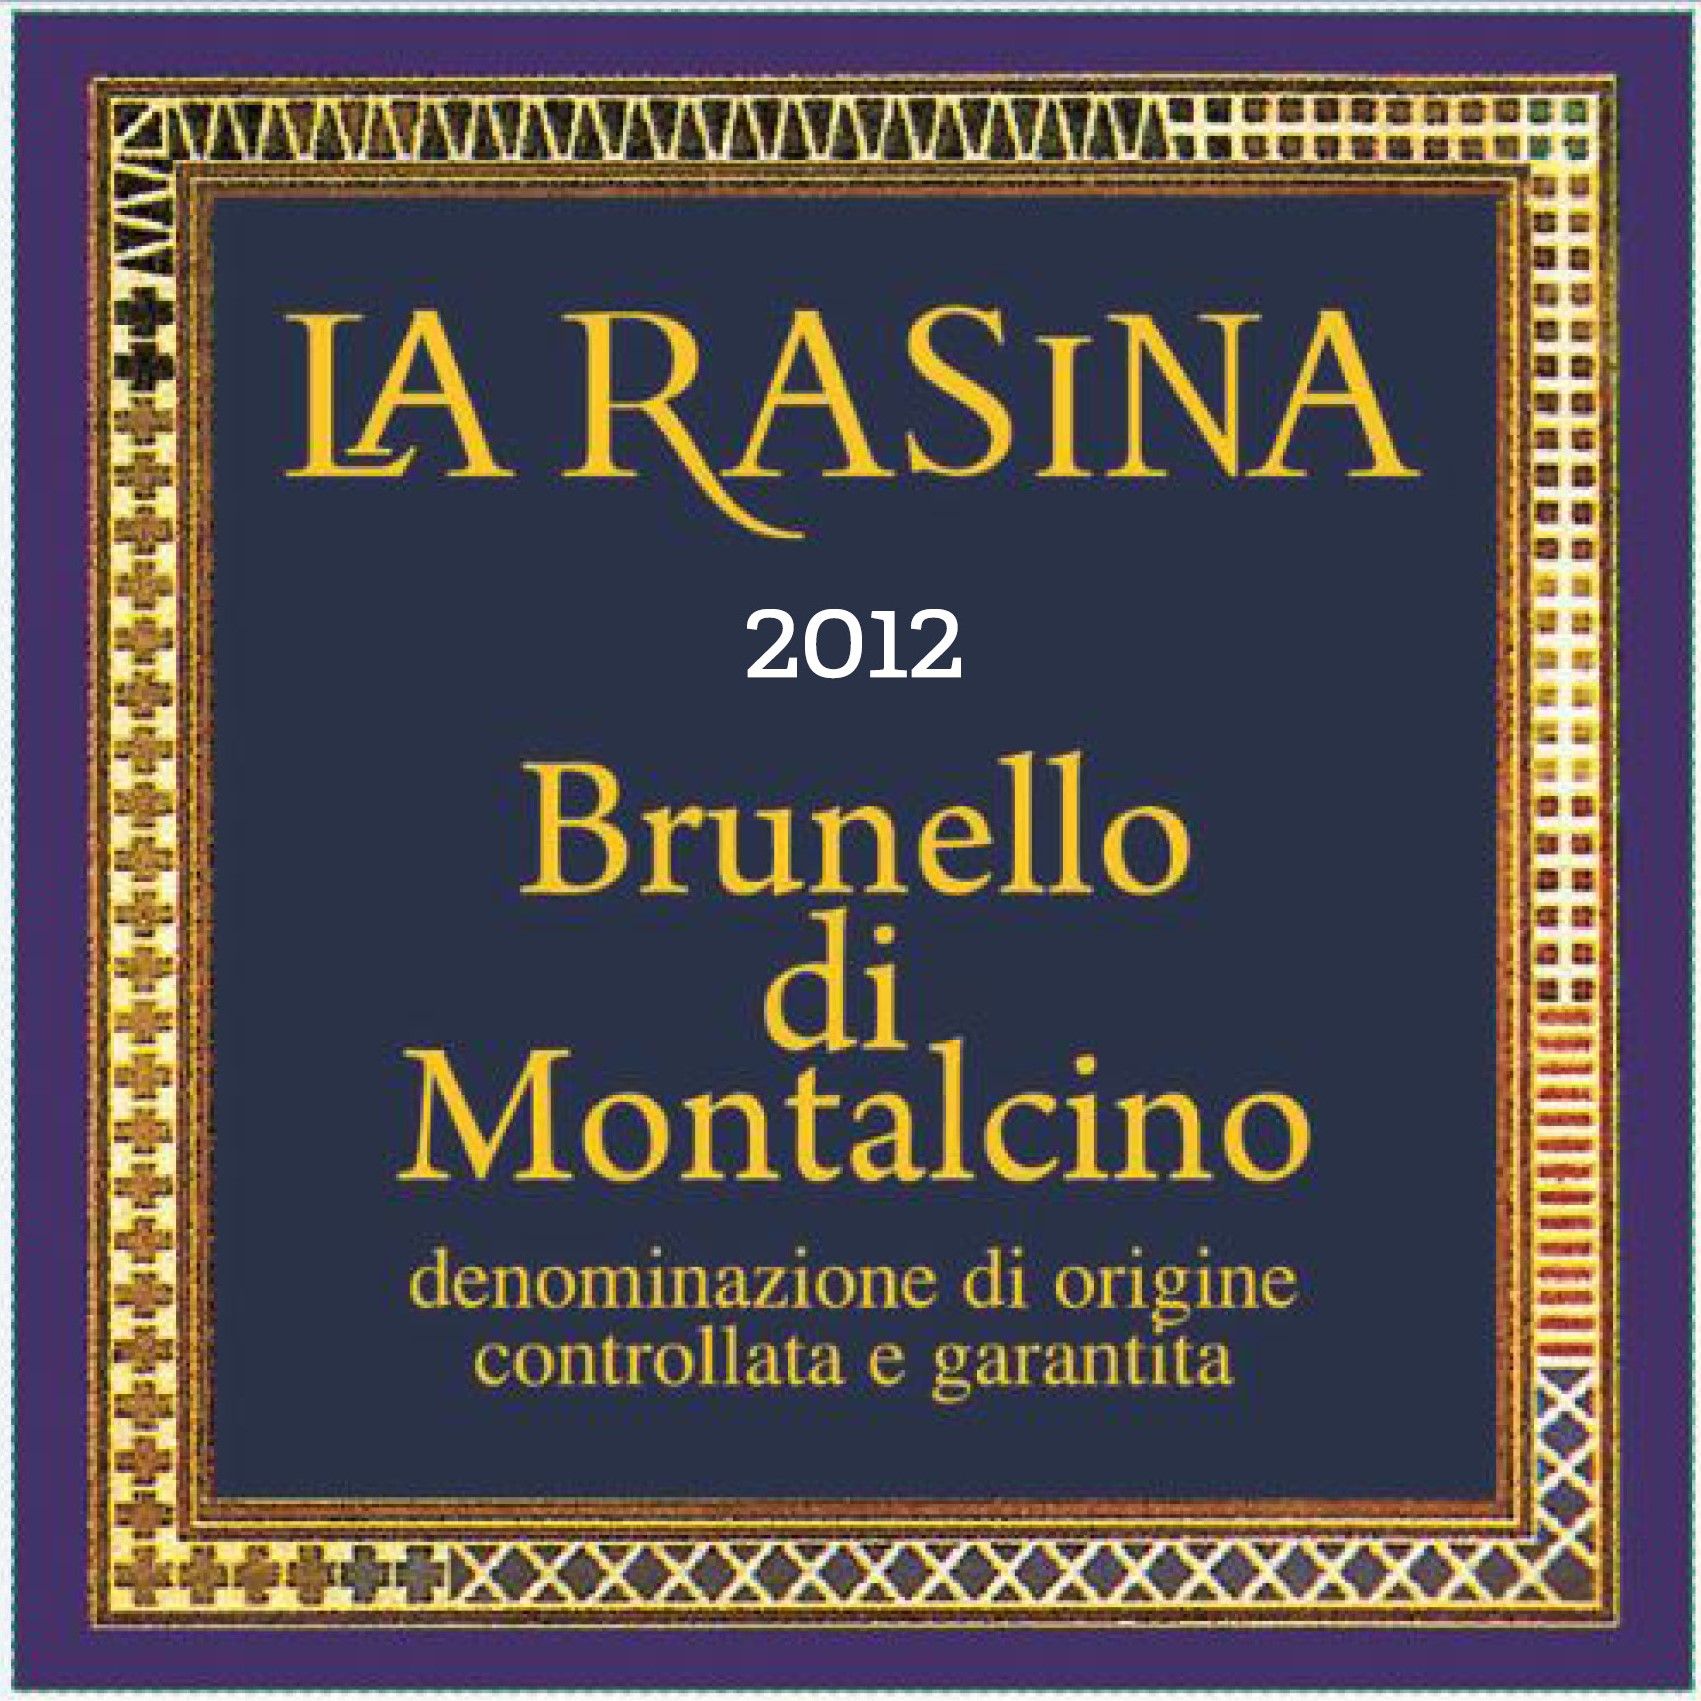 2012 La Rasina Brunello di Montalcino - click image for full description